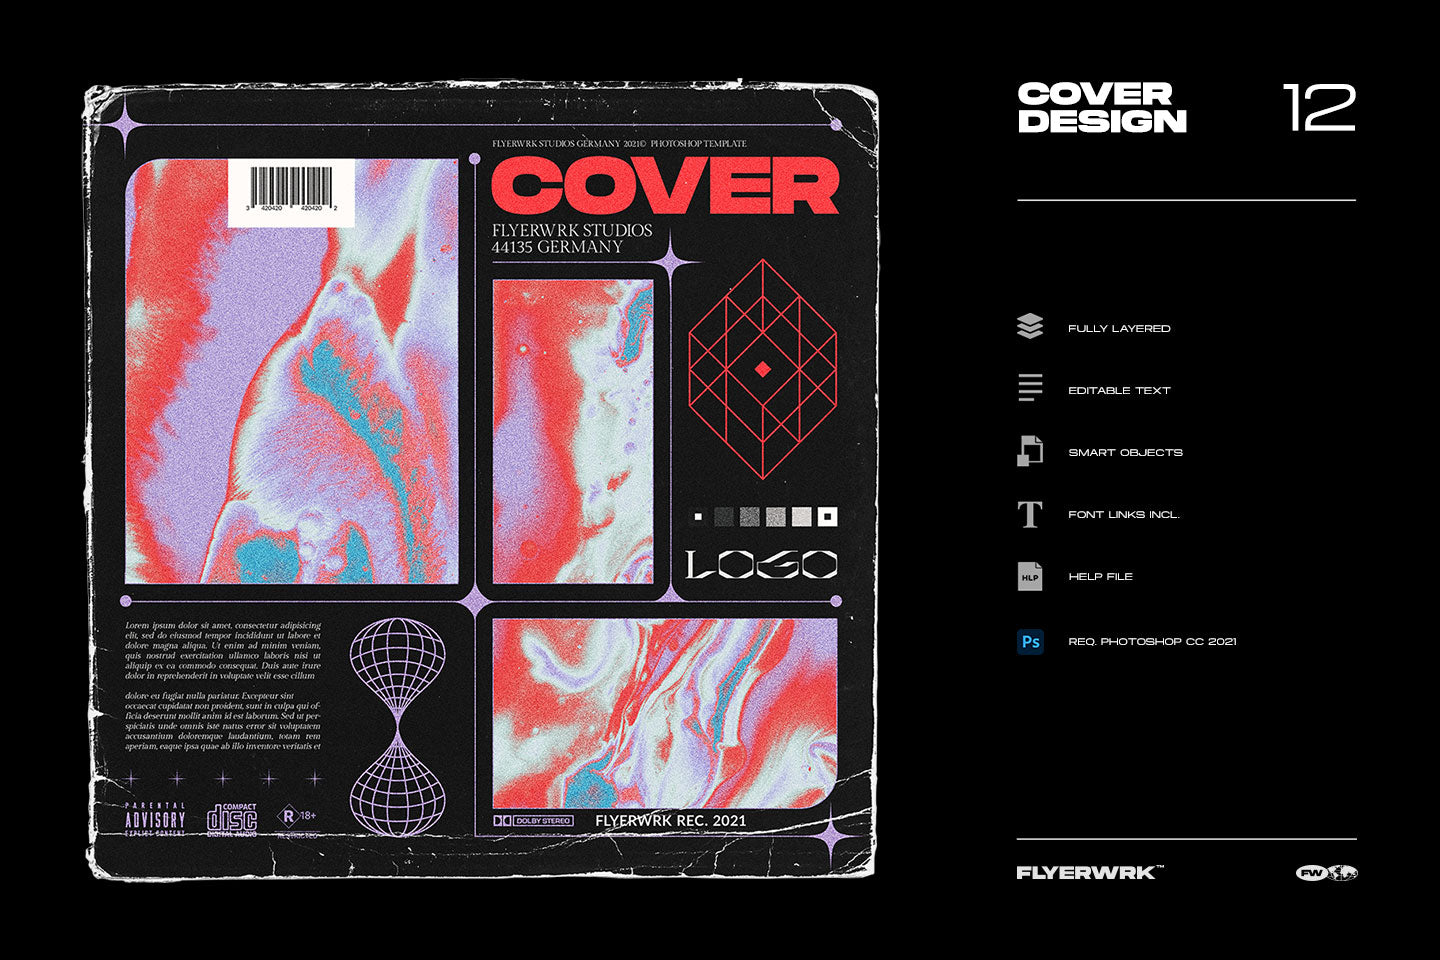 Cover Design 12